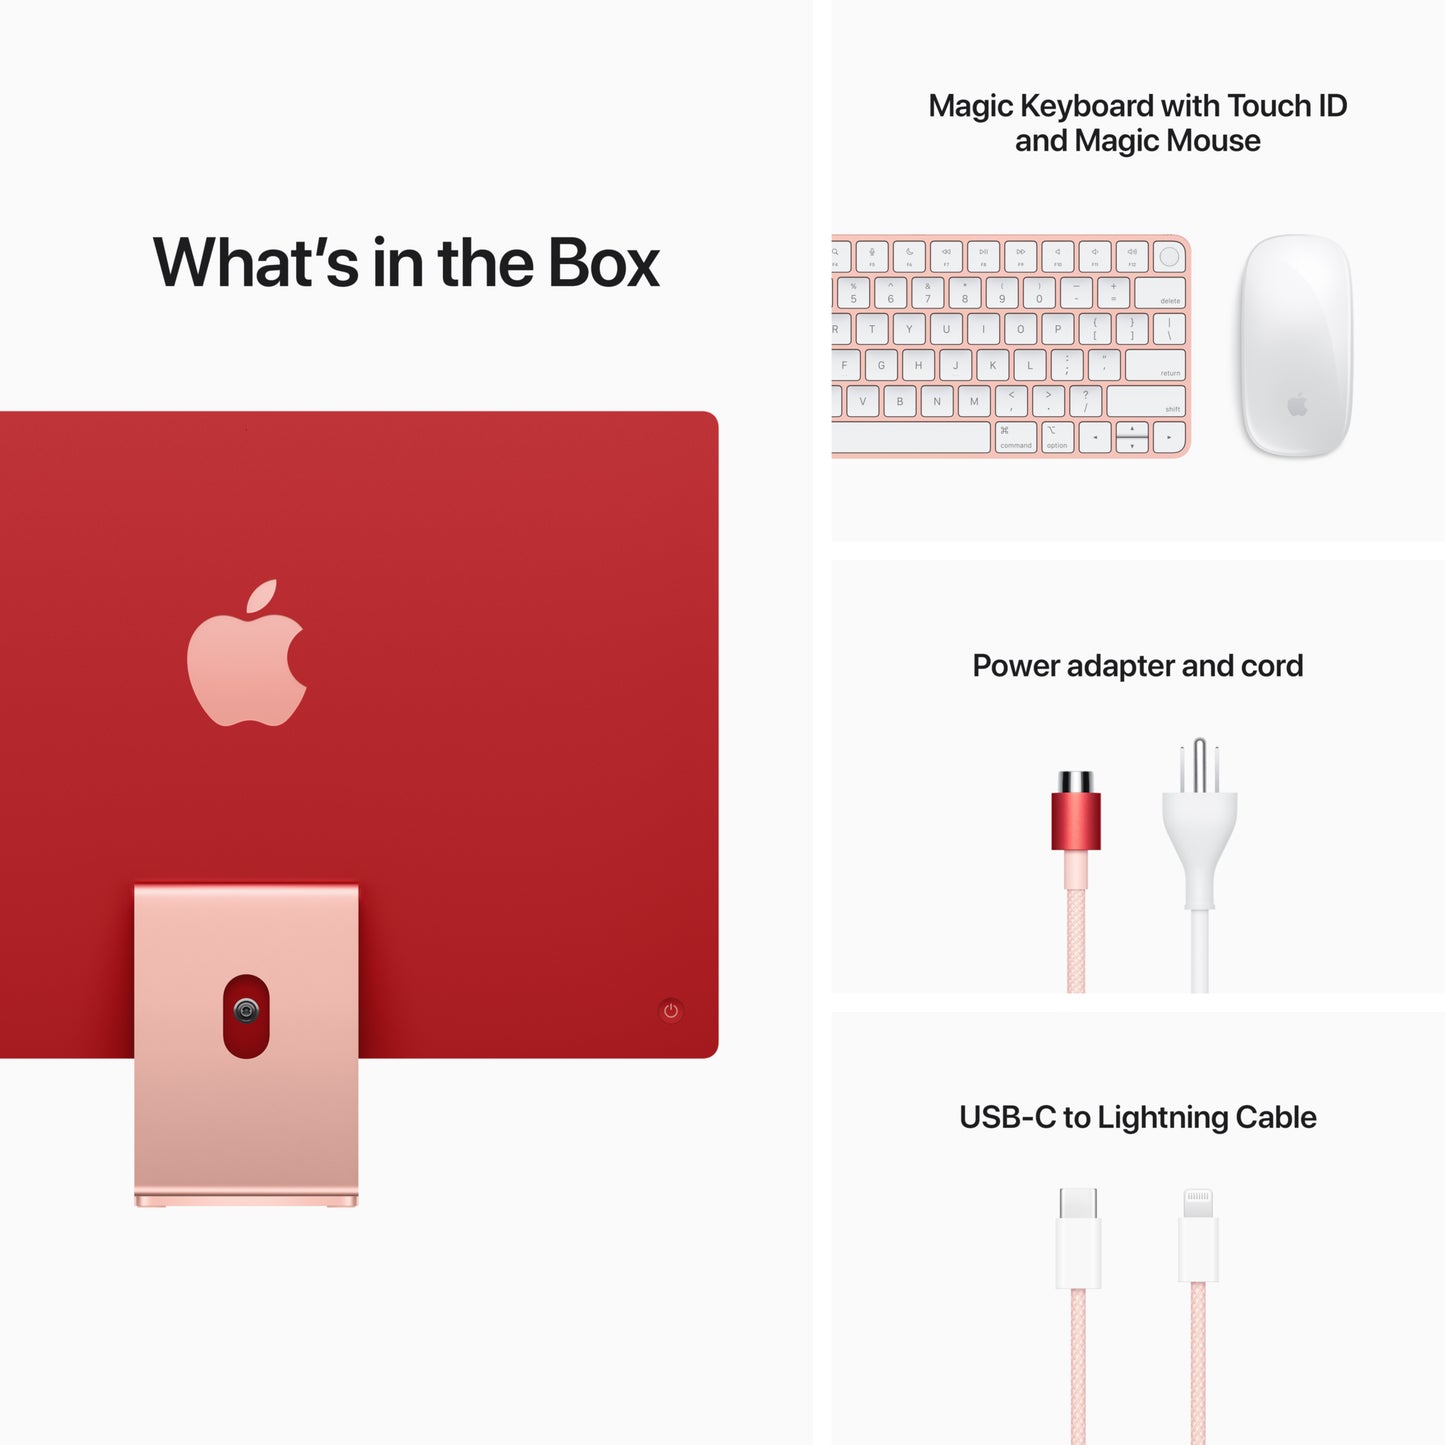 iMac 24in - Apple M1 8-Core CPU/8-Core GPU - Pink